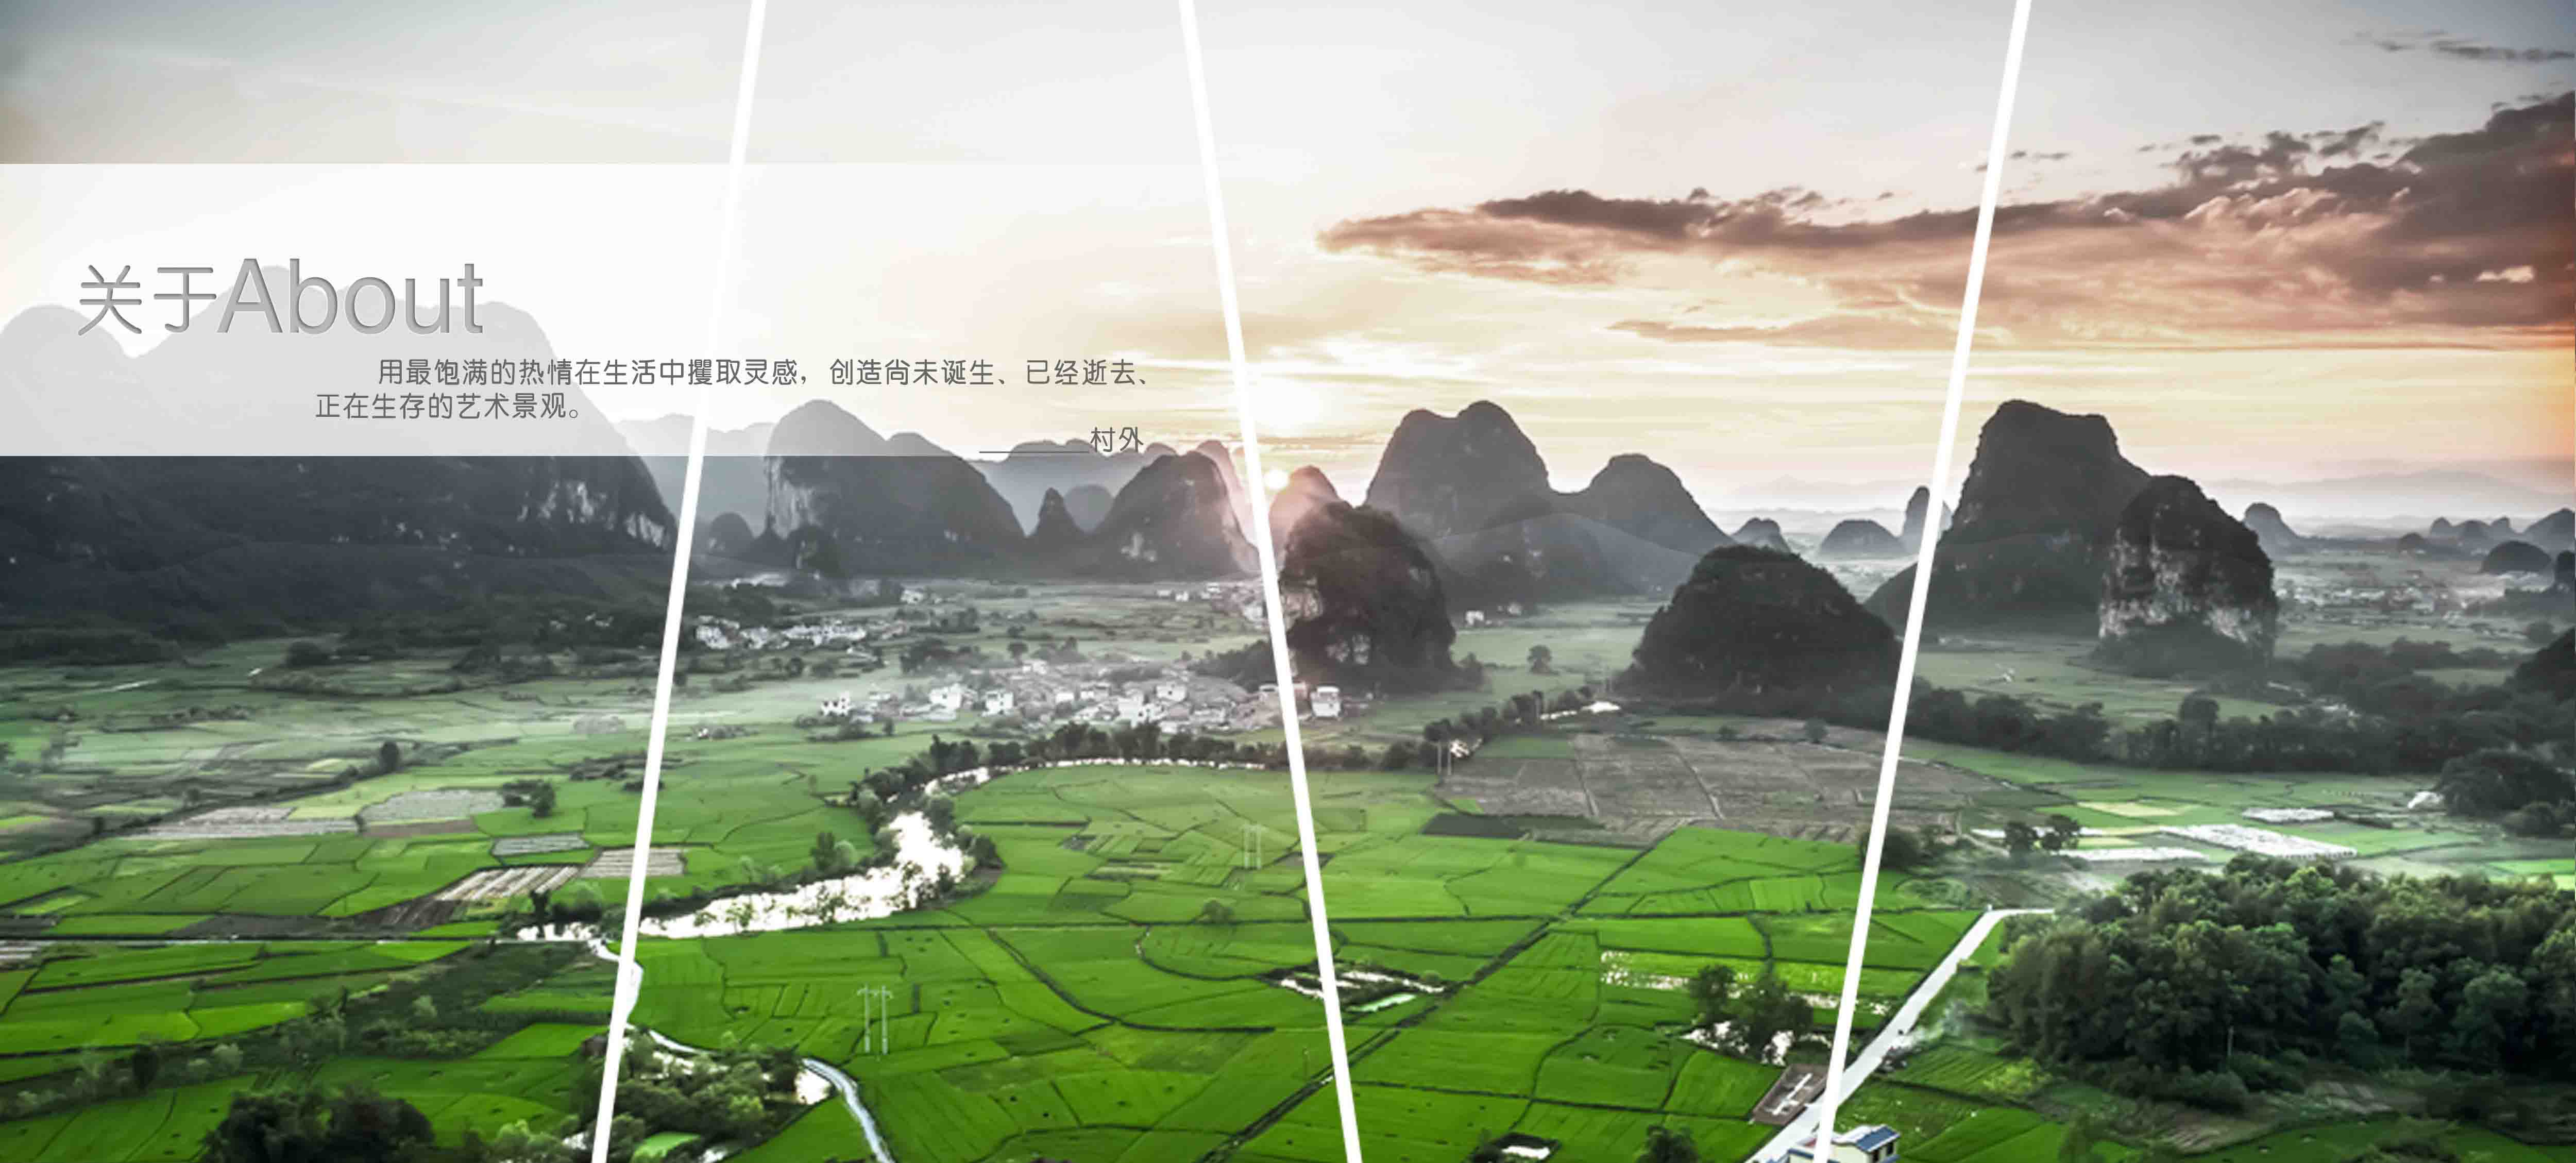 郑州uedbet新版安卓版下载景观设计有限公司